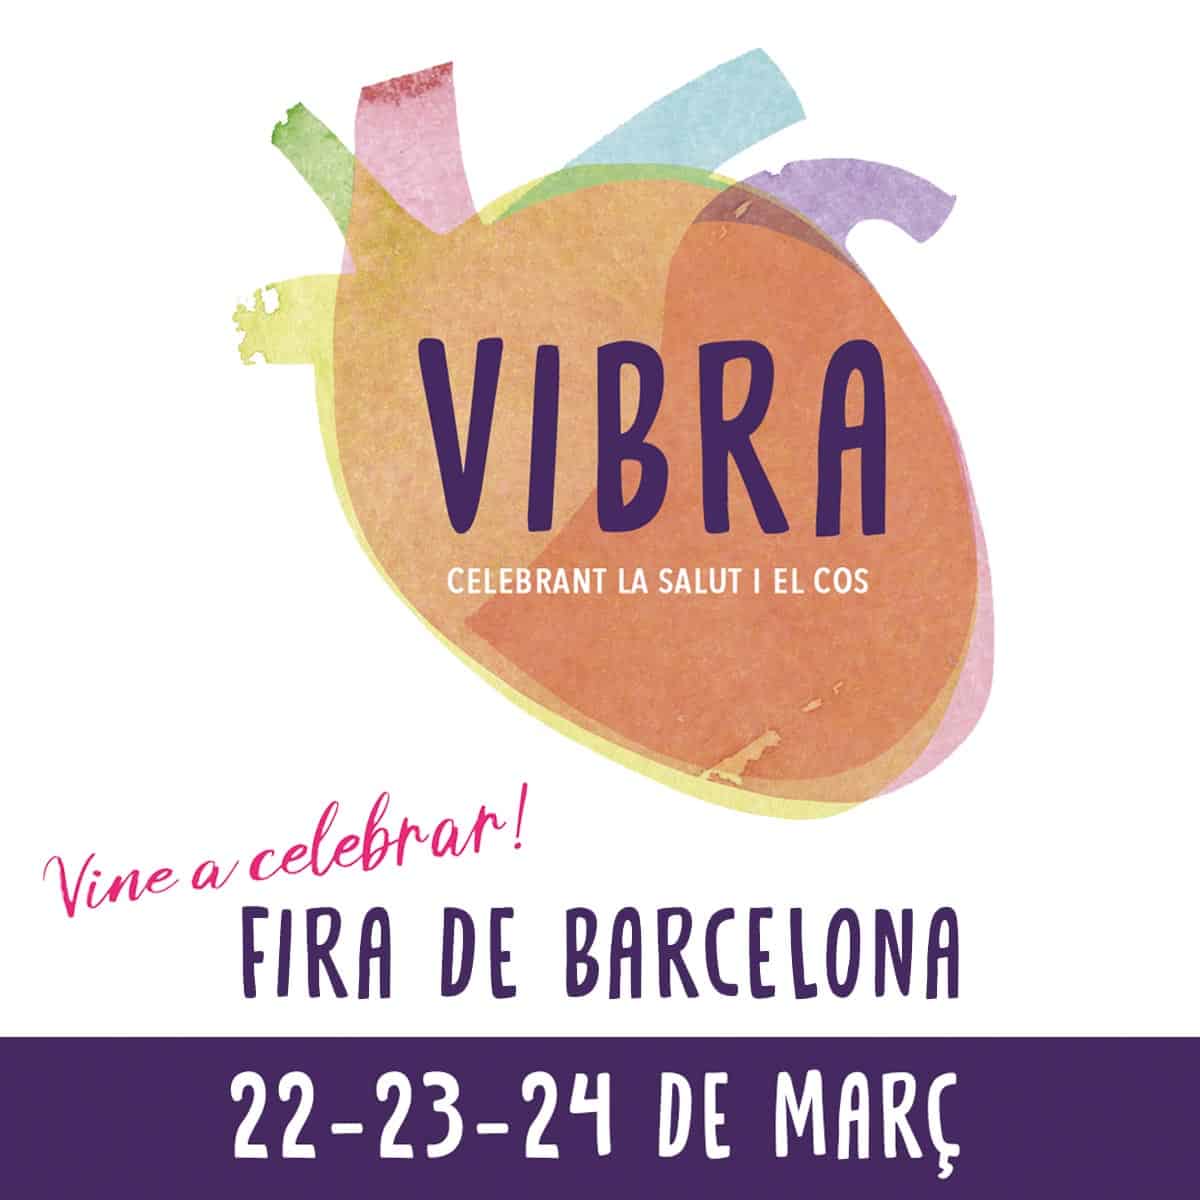 Festival Vibra: l'evento dedicato alla salute e all'alimentazione in arrivo a Barcellona